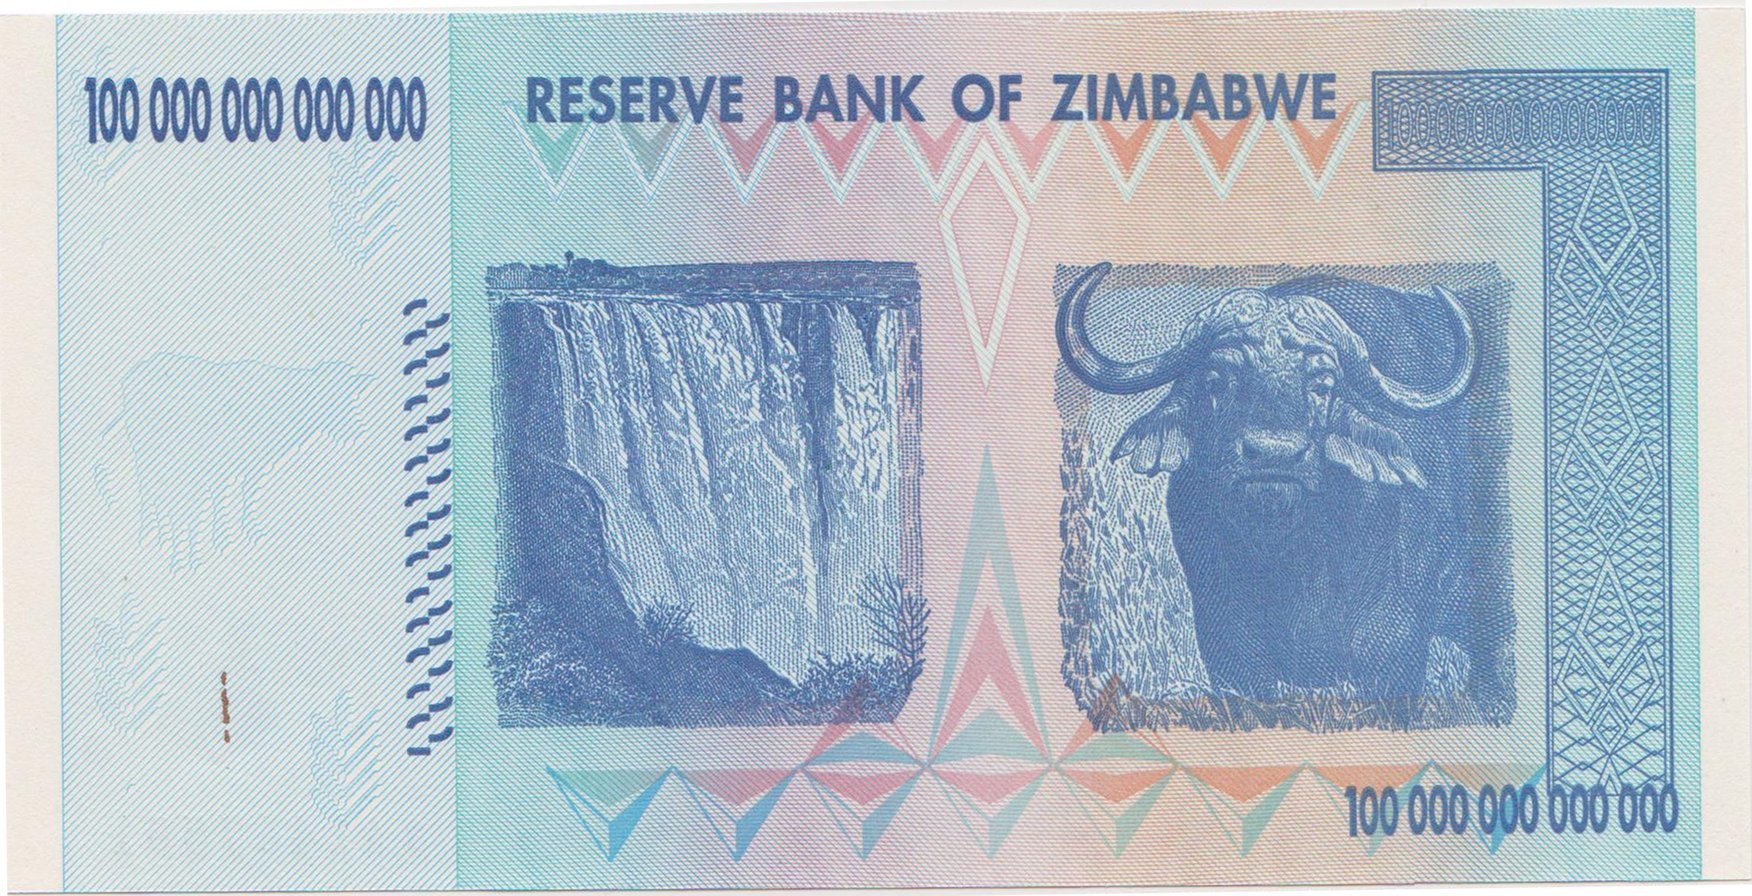 zimbabwe-banknotes-100-trillion-dollars-back.jpeg